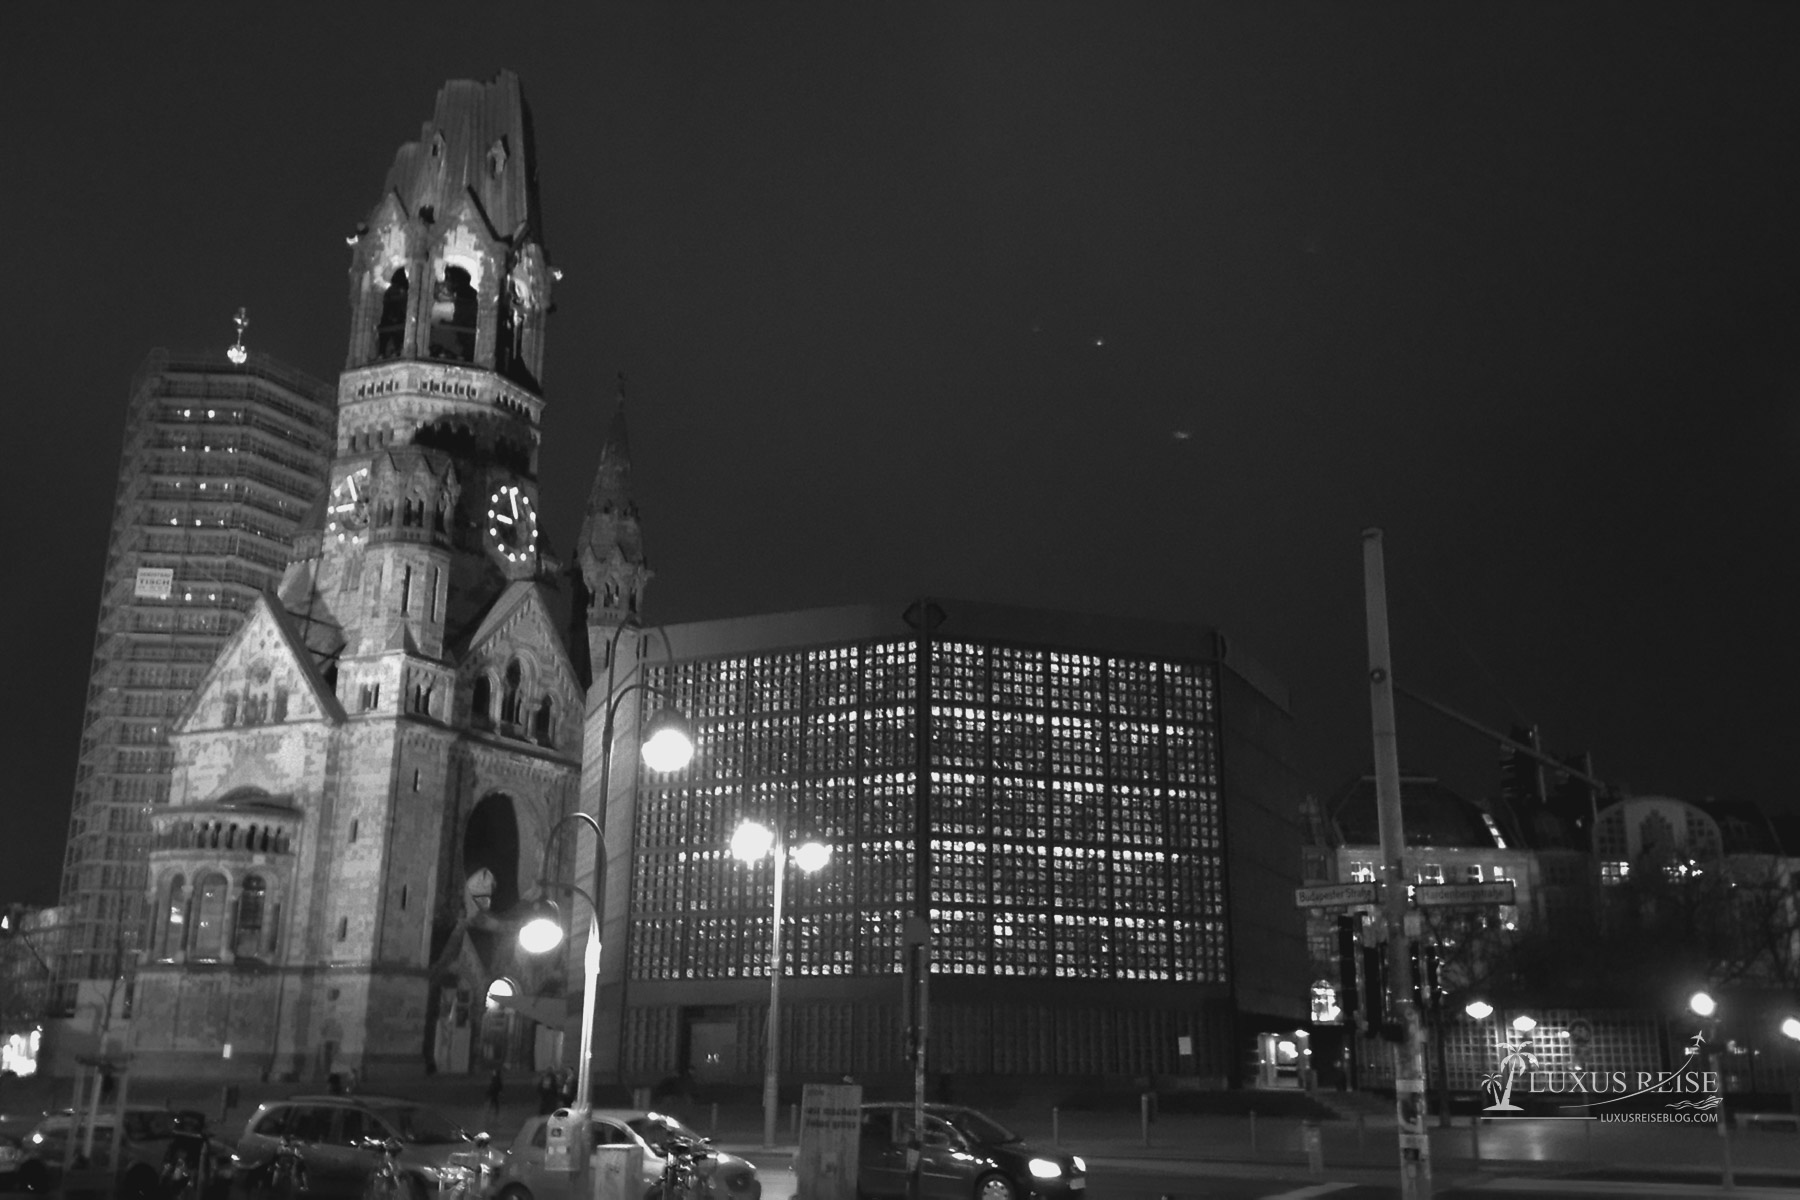 Berlin bei Nacht - schwarz-weiss Aufnahmen einer Großstadt - Brandenburger Tor - Siegessäule - Potsdamer Platz